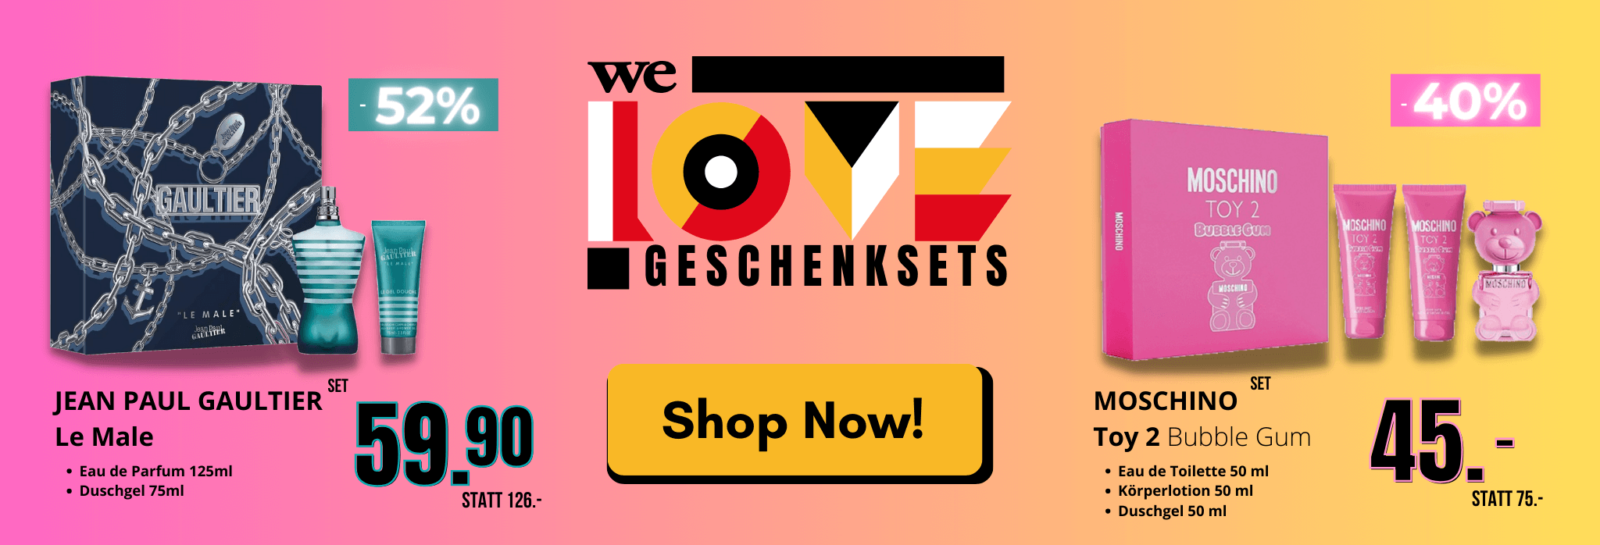 We Love Geschenksets - Free Shop Swiss Aktionen